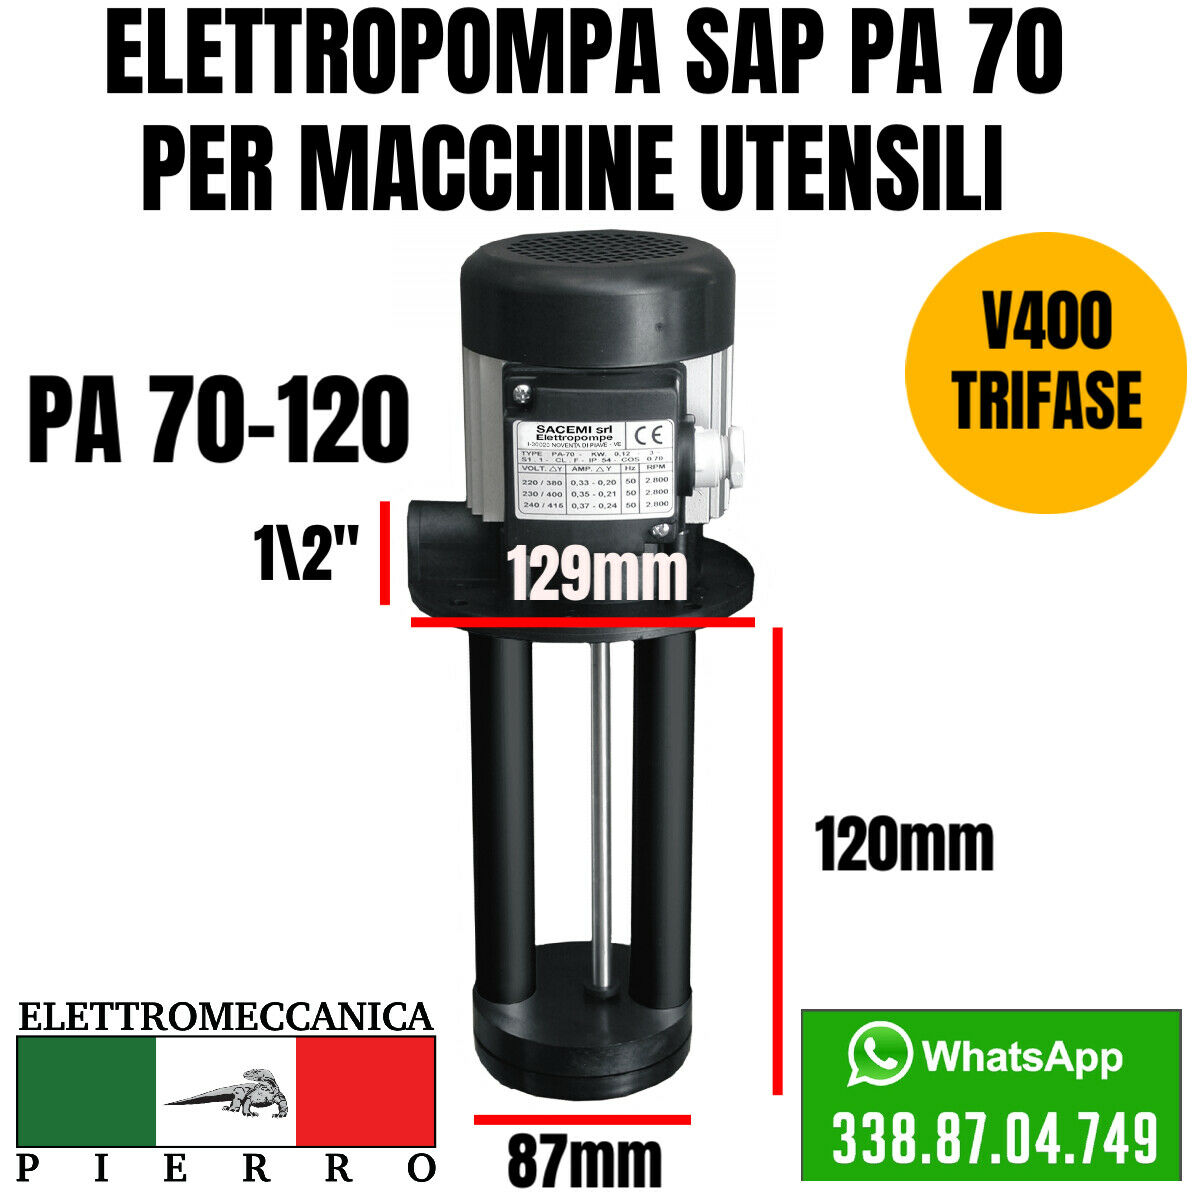 Logo elettromeccanica Pierro elettromeccanica express Elettropompa sacemi per macchine utensili SAP PA 70-120